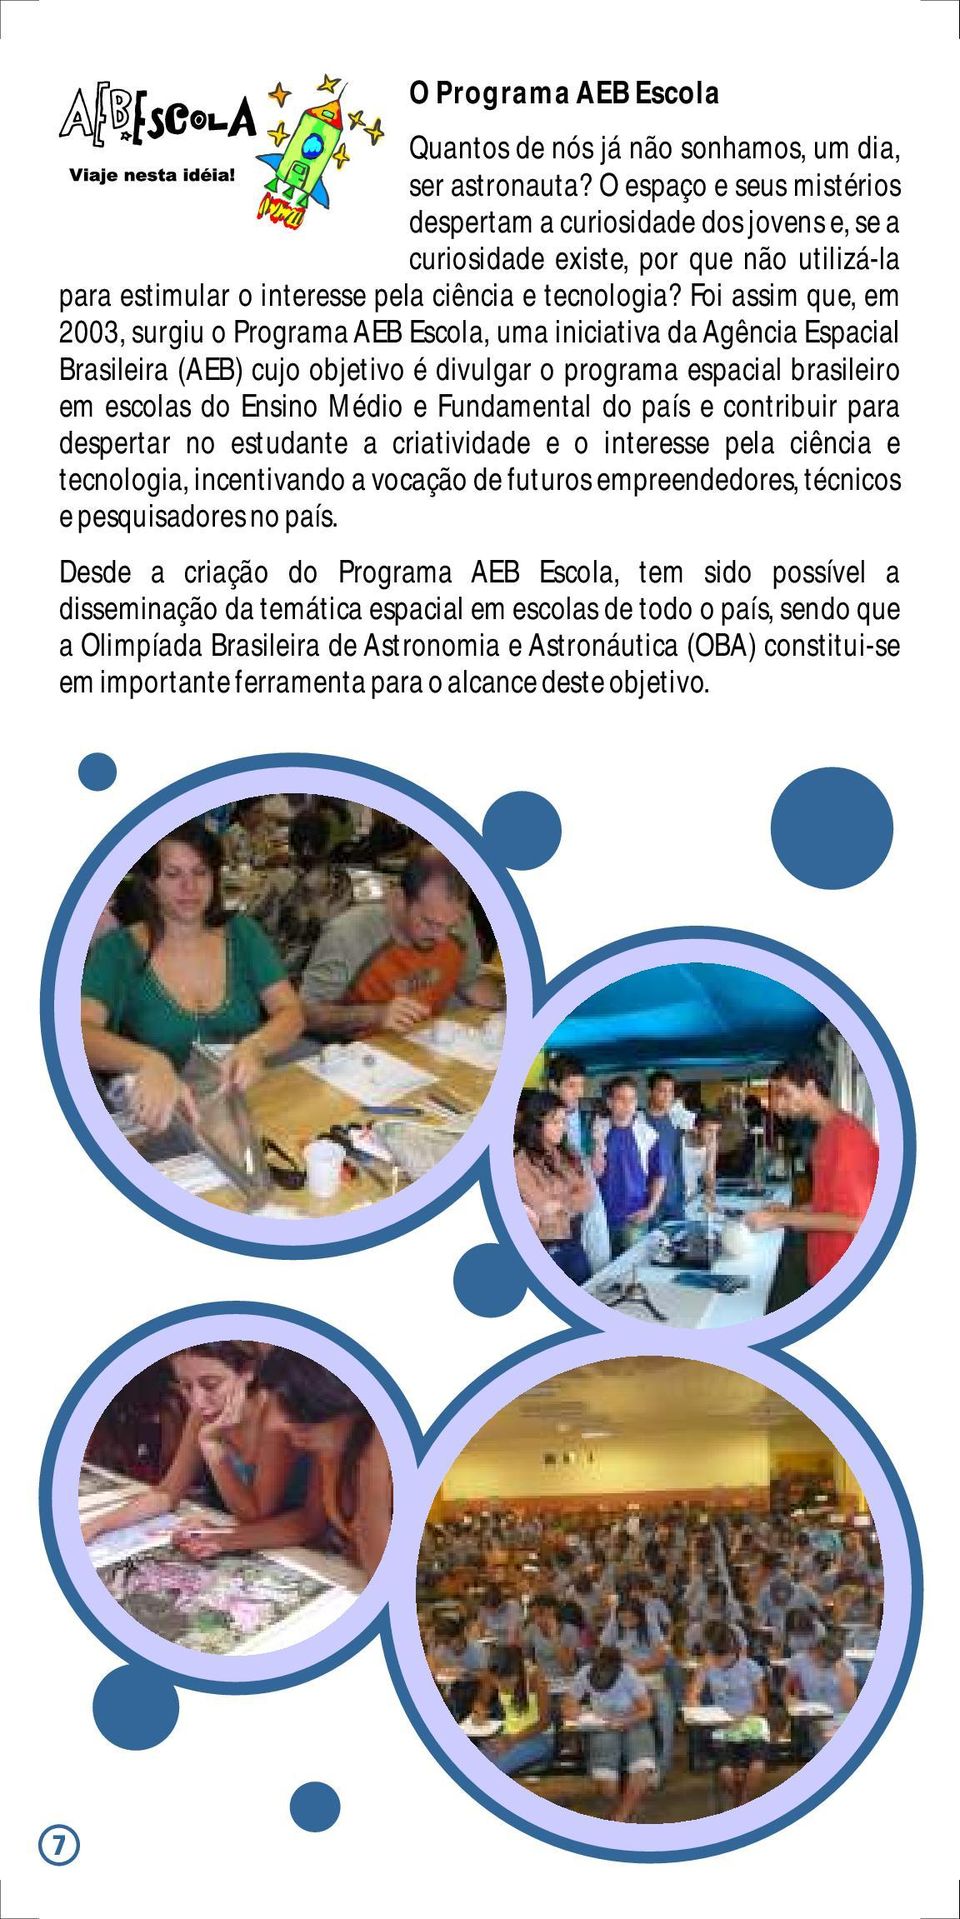 Foi assim que, em 2003, surgiu o Programa AEB Escola, uma iniciativa da Agência Espacial Brasileira (AEB) cujo objetivo é divulgar o programa espacial brasileiro em escolas do Ensino Médio e